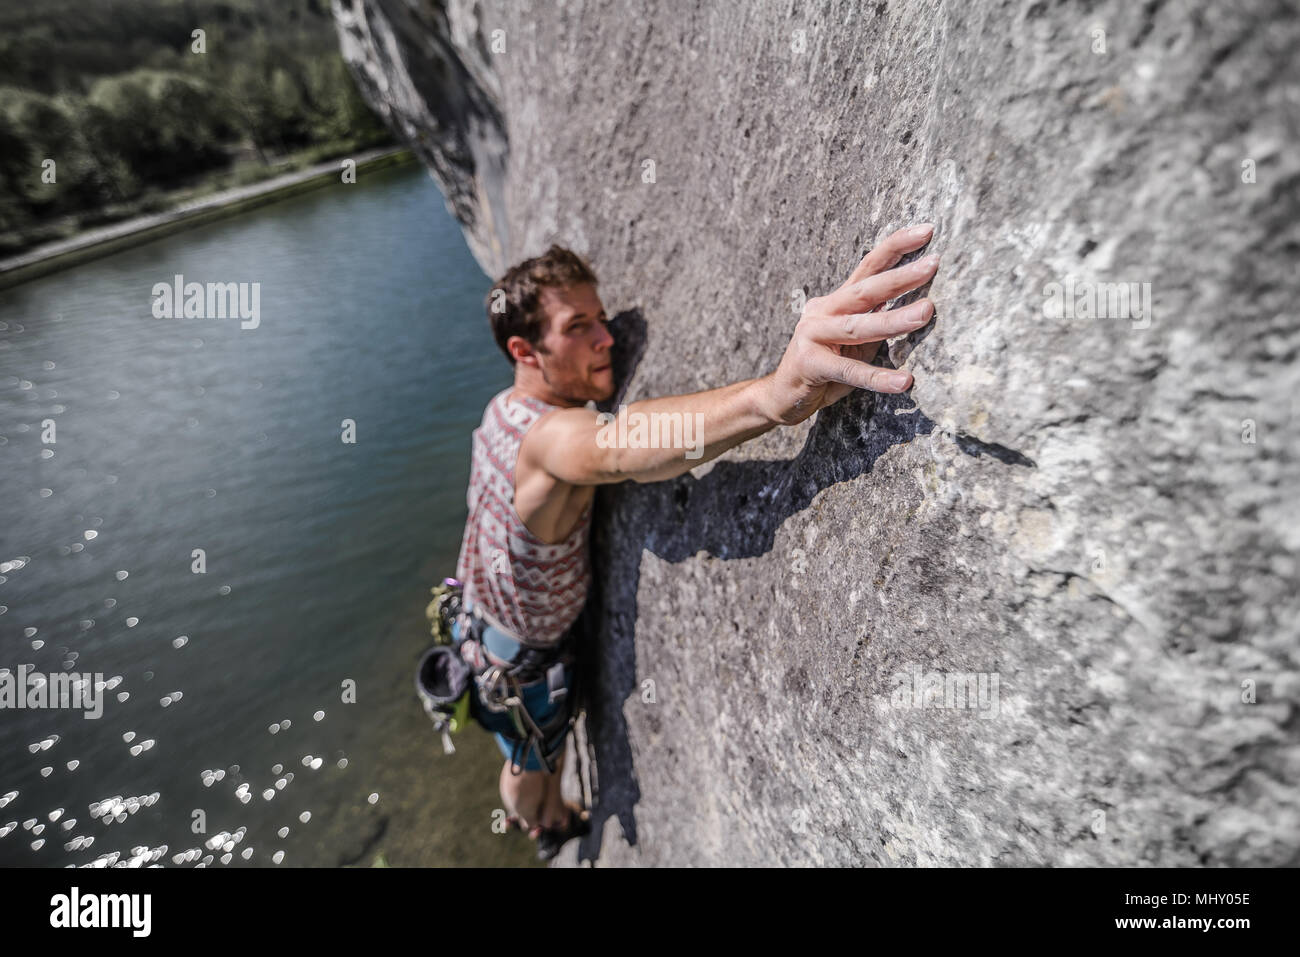 Young male rock climber atteignant alors que l'escalade calcaire, Freyr, Belgique, elevated view Banque D'Images